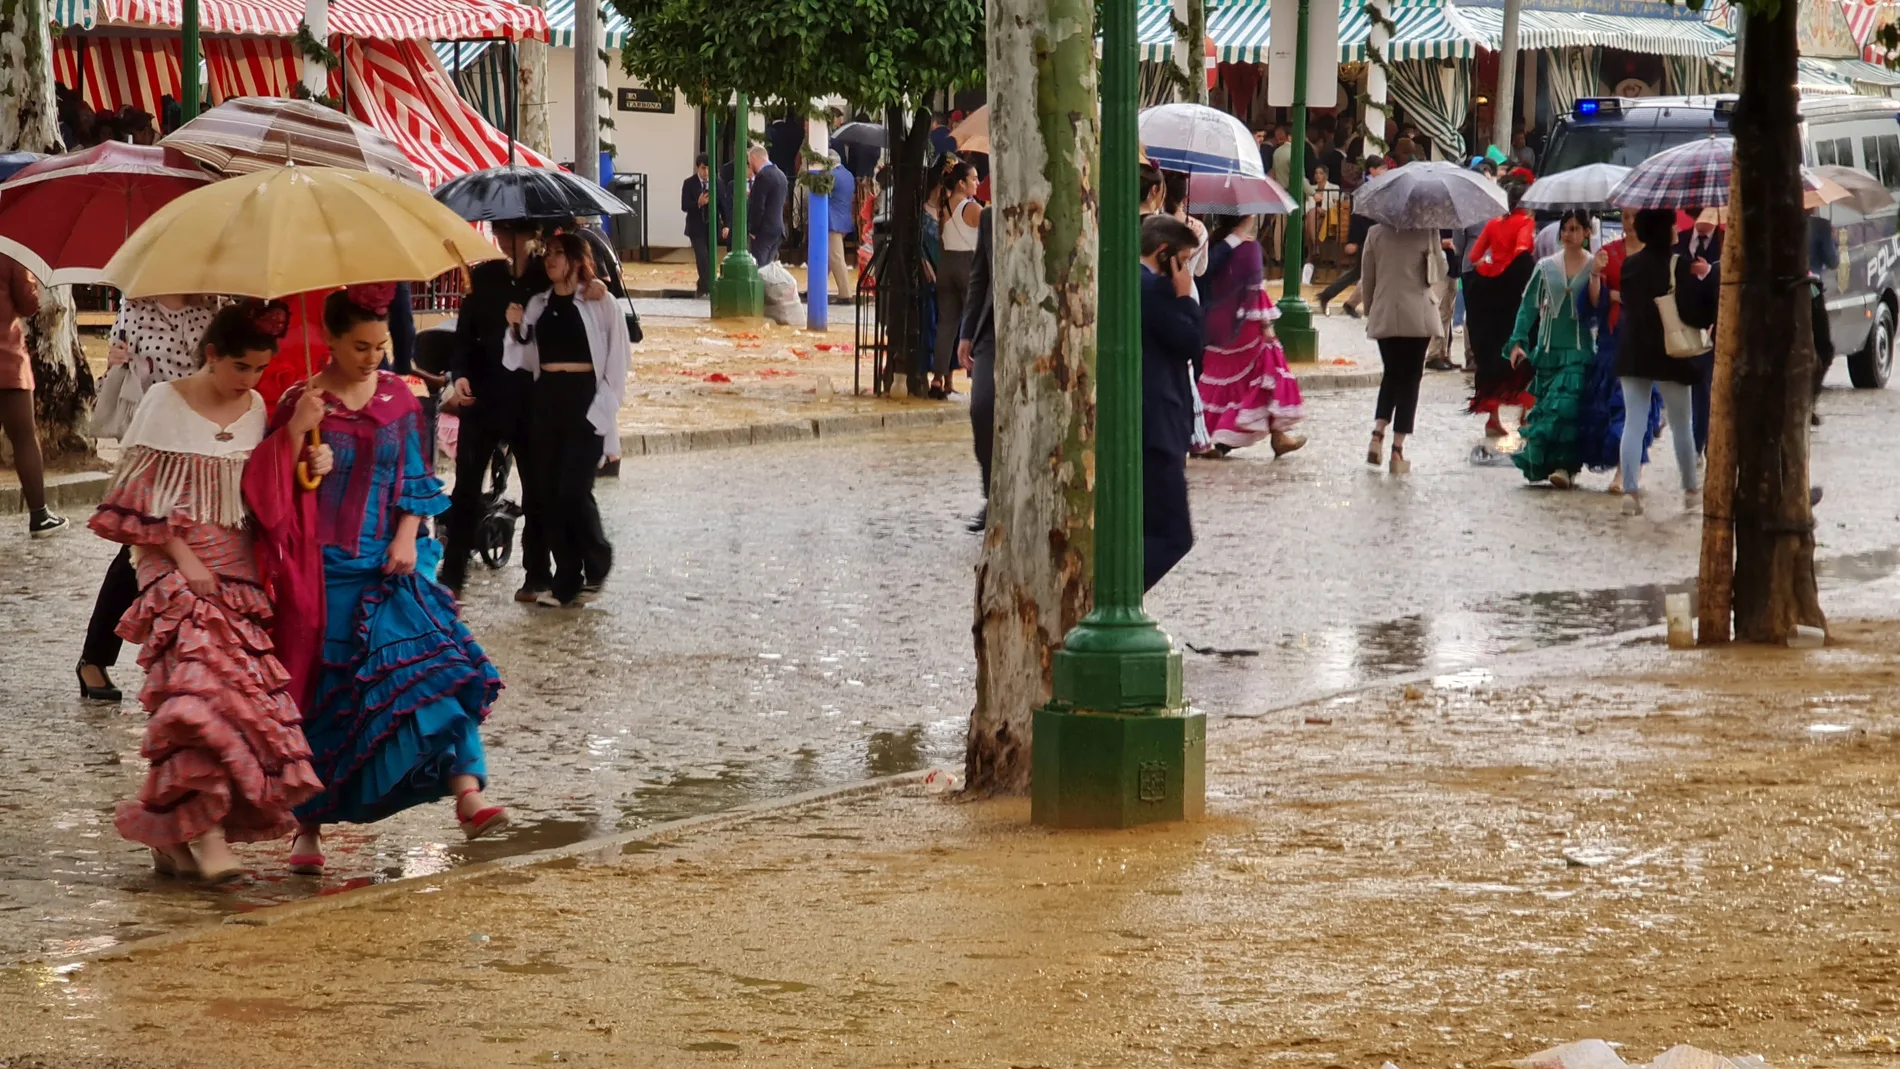 Así se han quedado las calles de la Feria tras la lluvia caída este lunes por la tarde